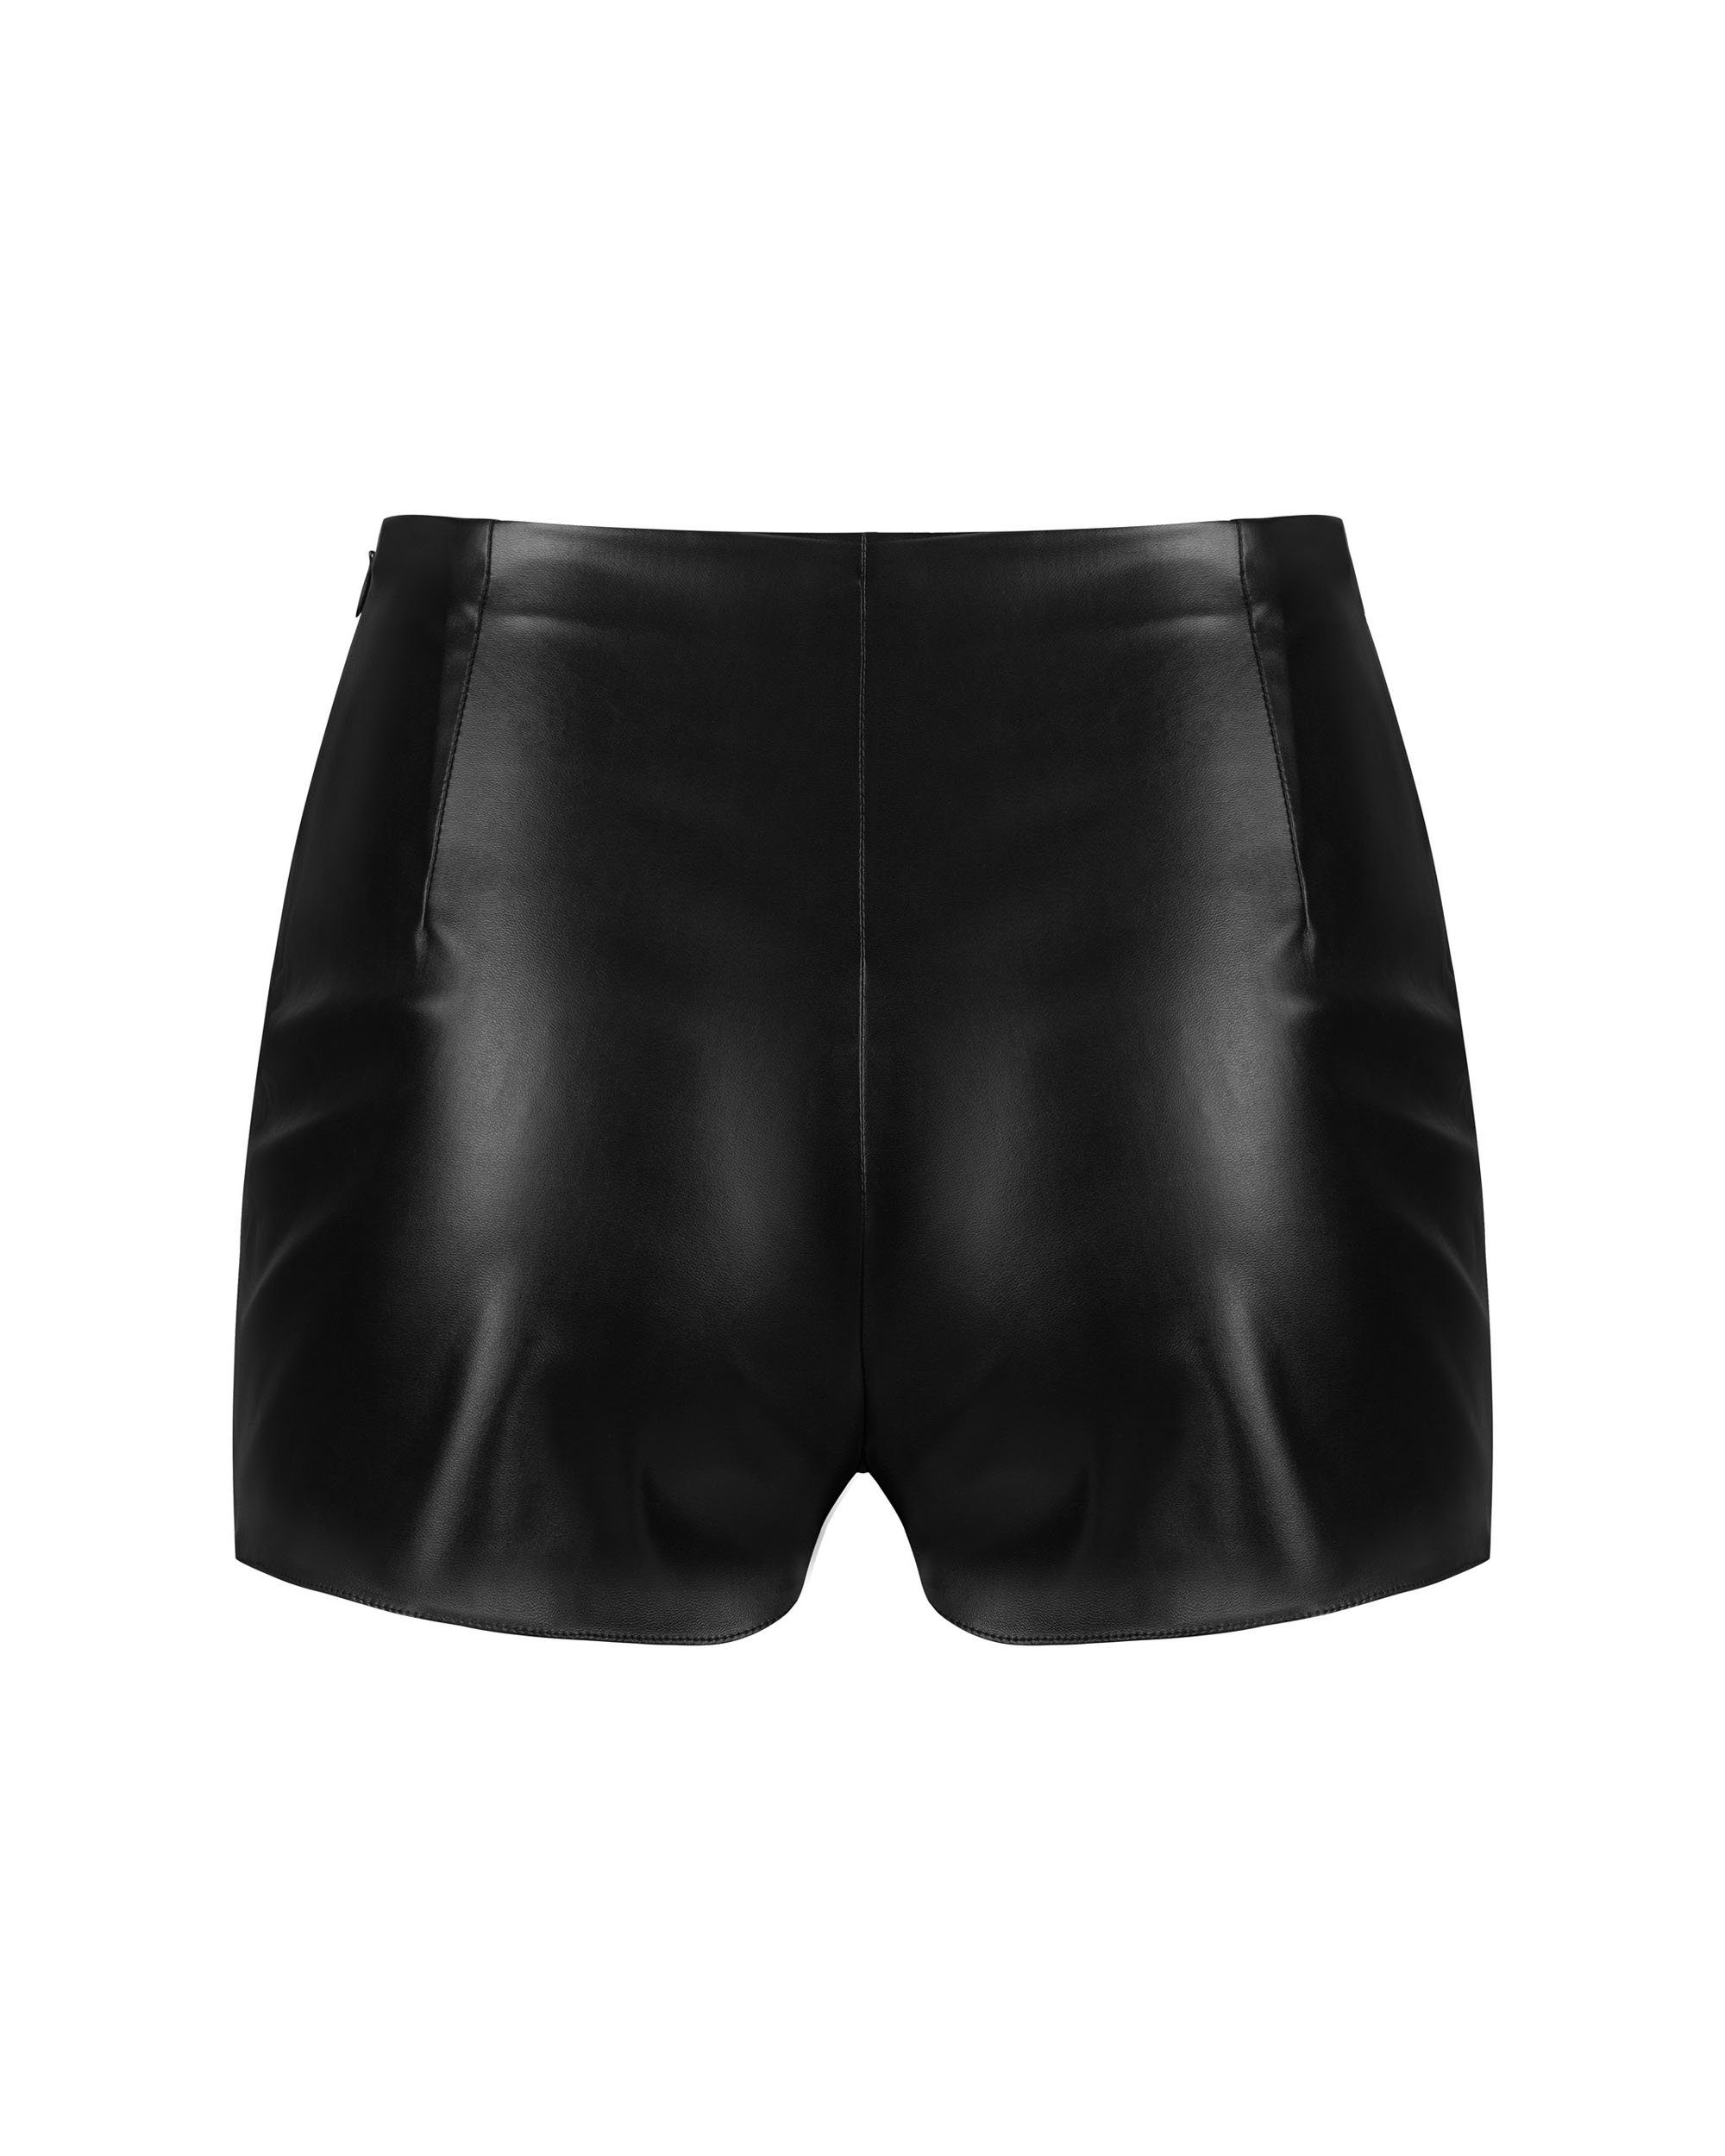 Panty 1-St) Obsessive Wetlook schwarz Kunstleder Hotpants elastisch (einzel,